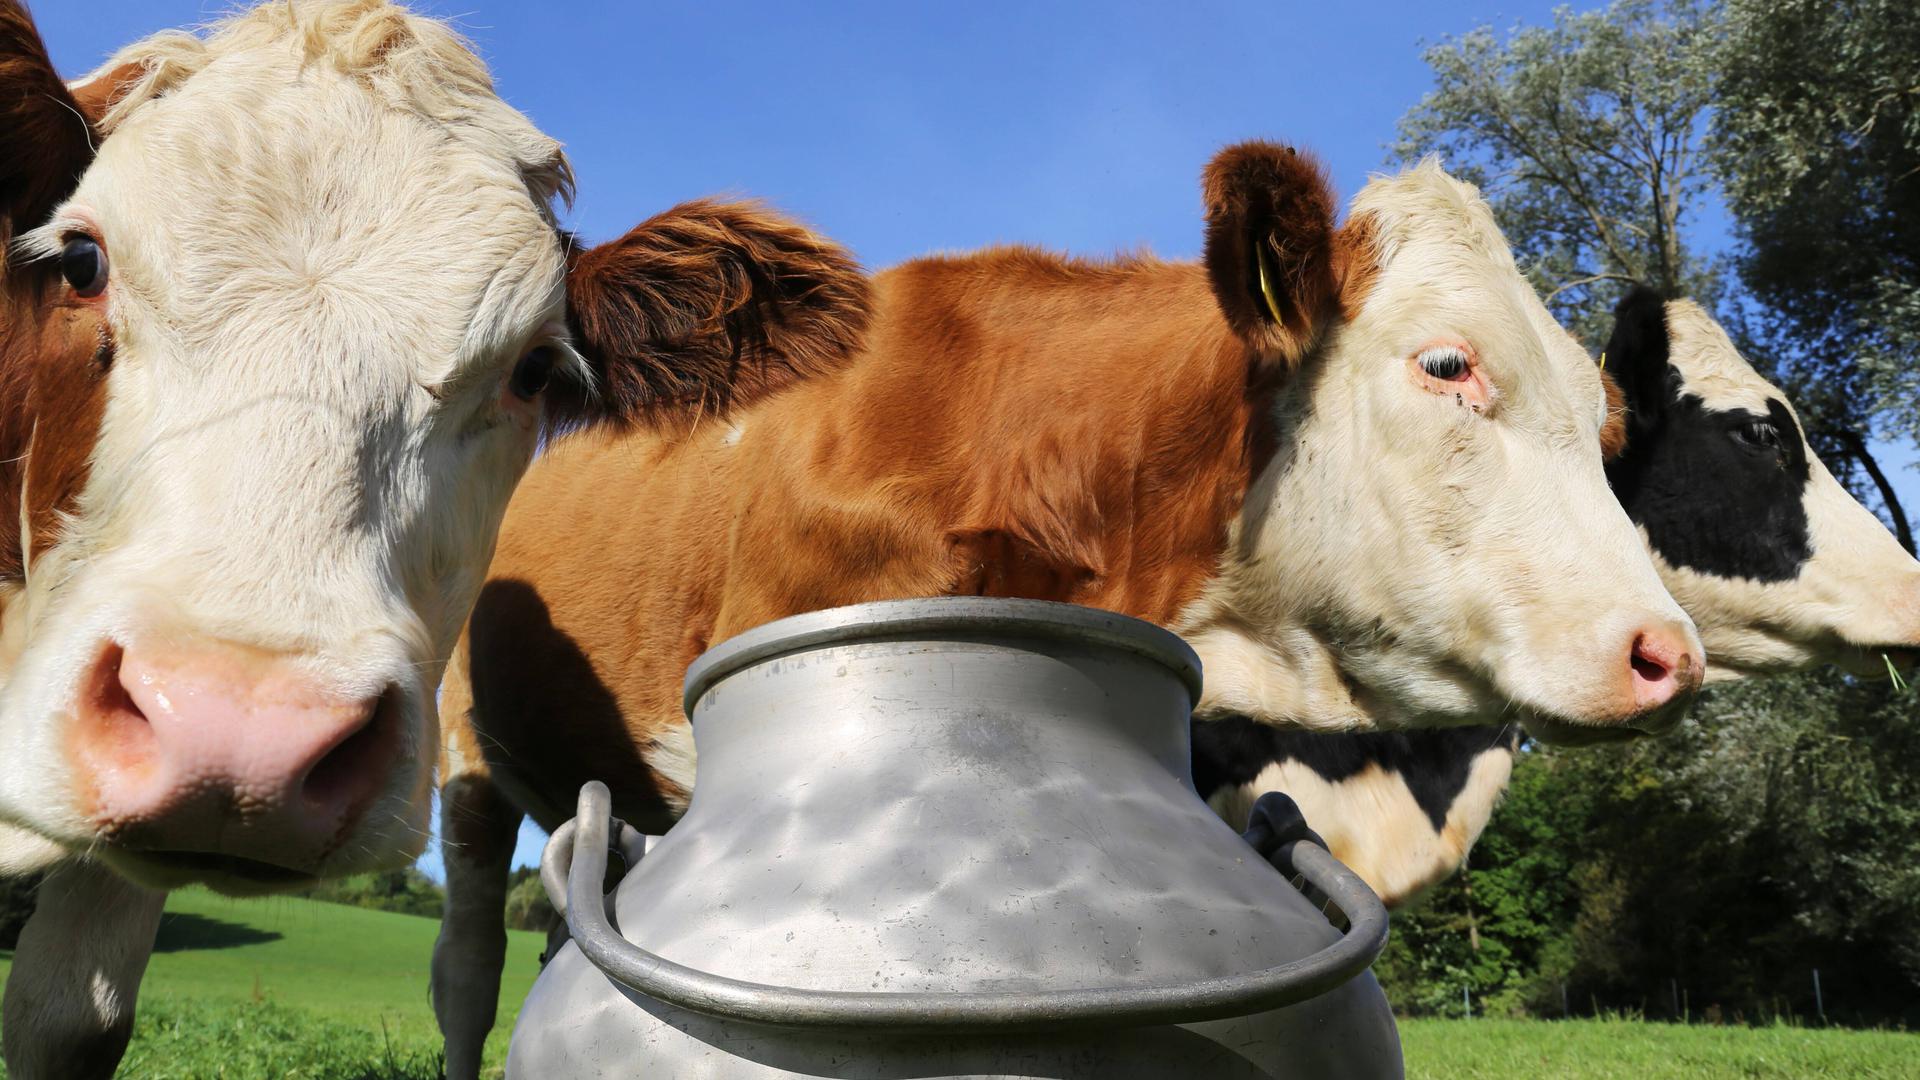 Die Idylle trügt mal nicht: Die Schwarzwaldmilch-Gruppe zielt aufgrund ihrer genossenschaftlichen Struktur darauf ab, den Milcherzeugern einen möglichst hohen Preis zu bezahlen. Doch viele Verbraucherinnen und Verbraucher schauen bei den allgemeinen Preissteigerungen auf jeden Cent.